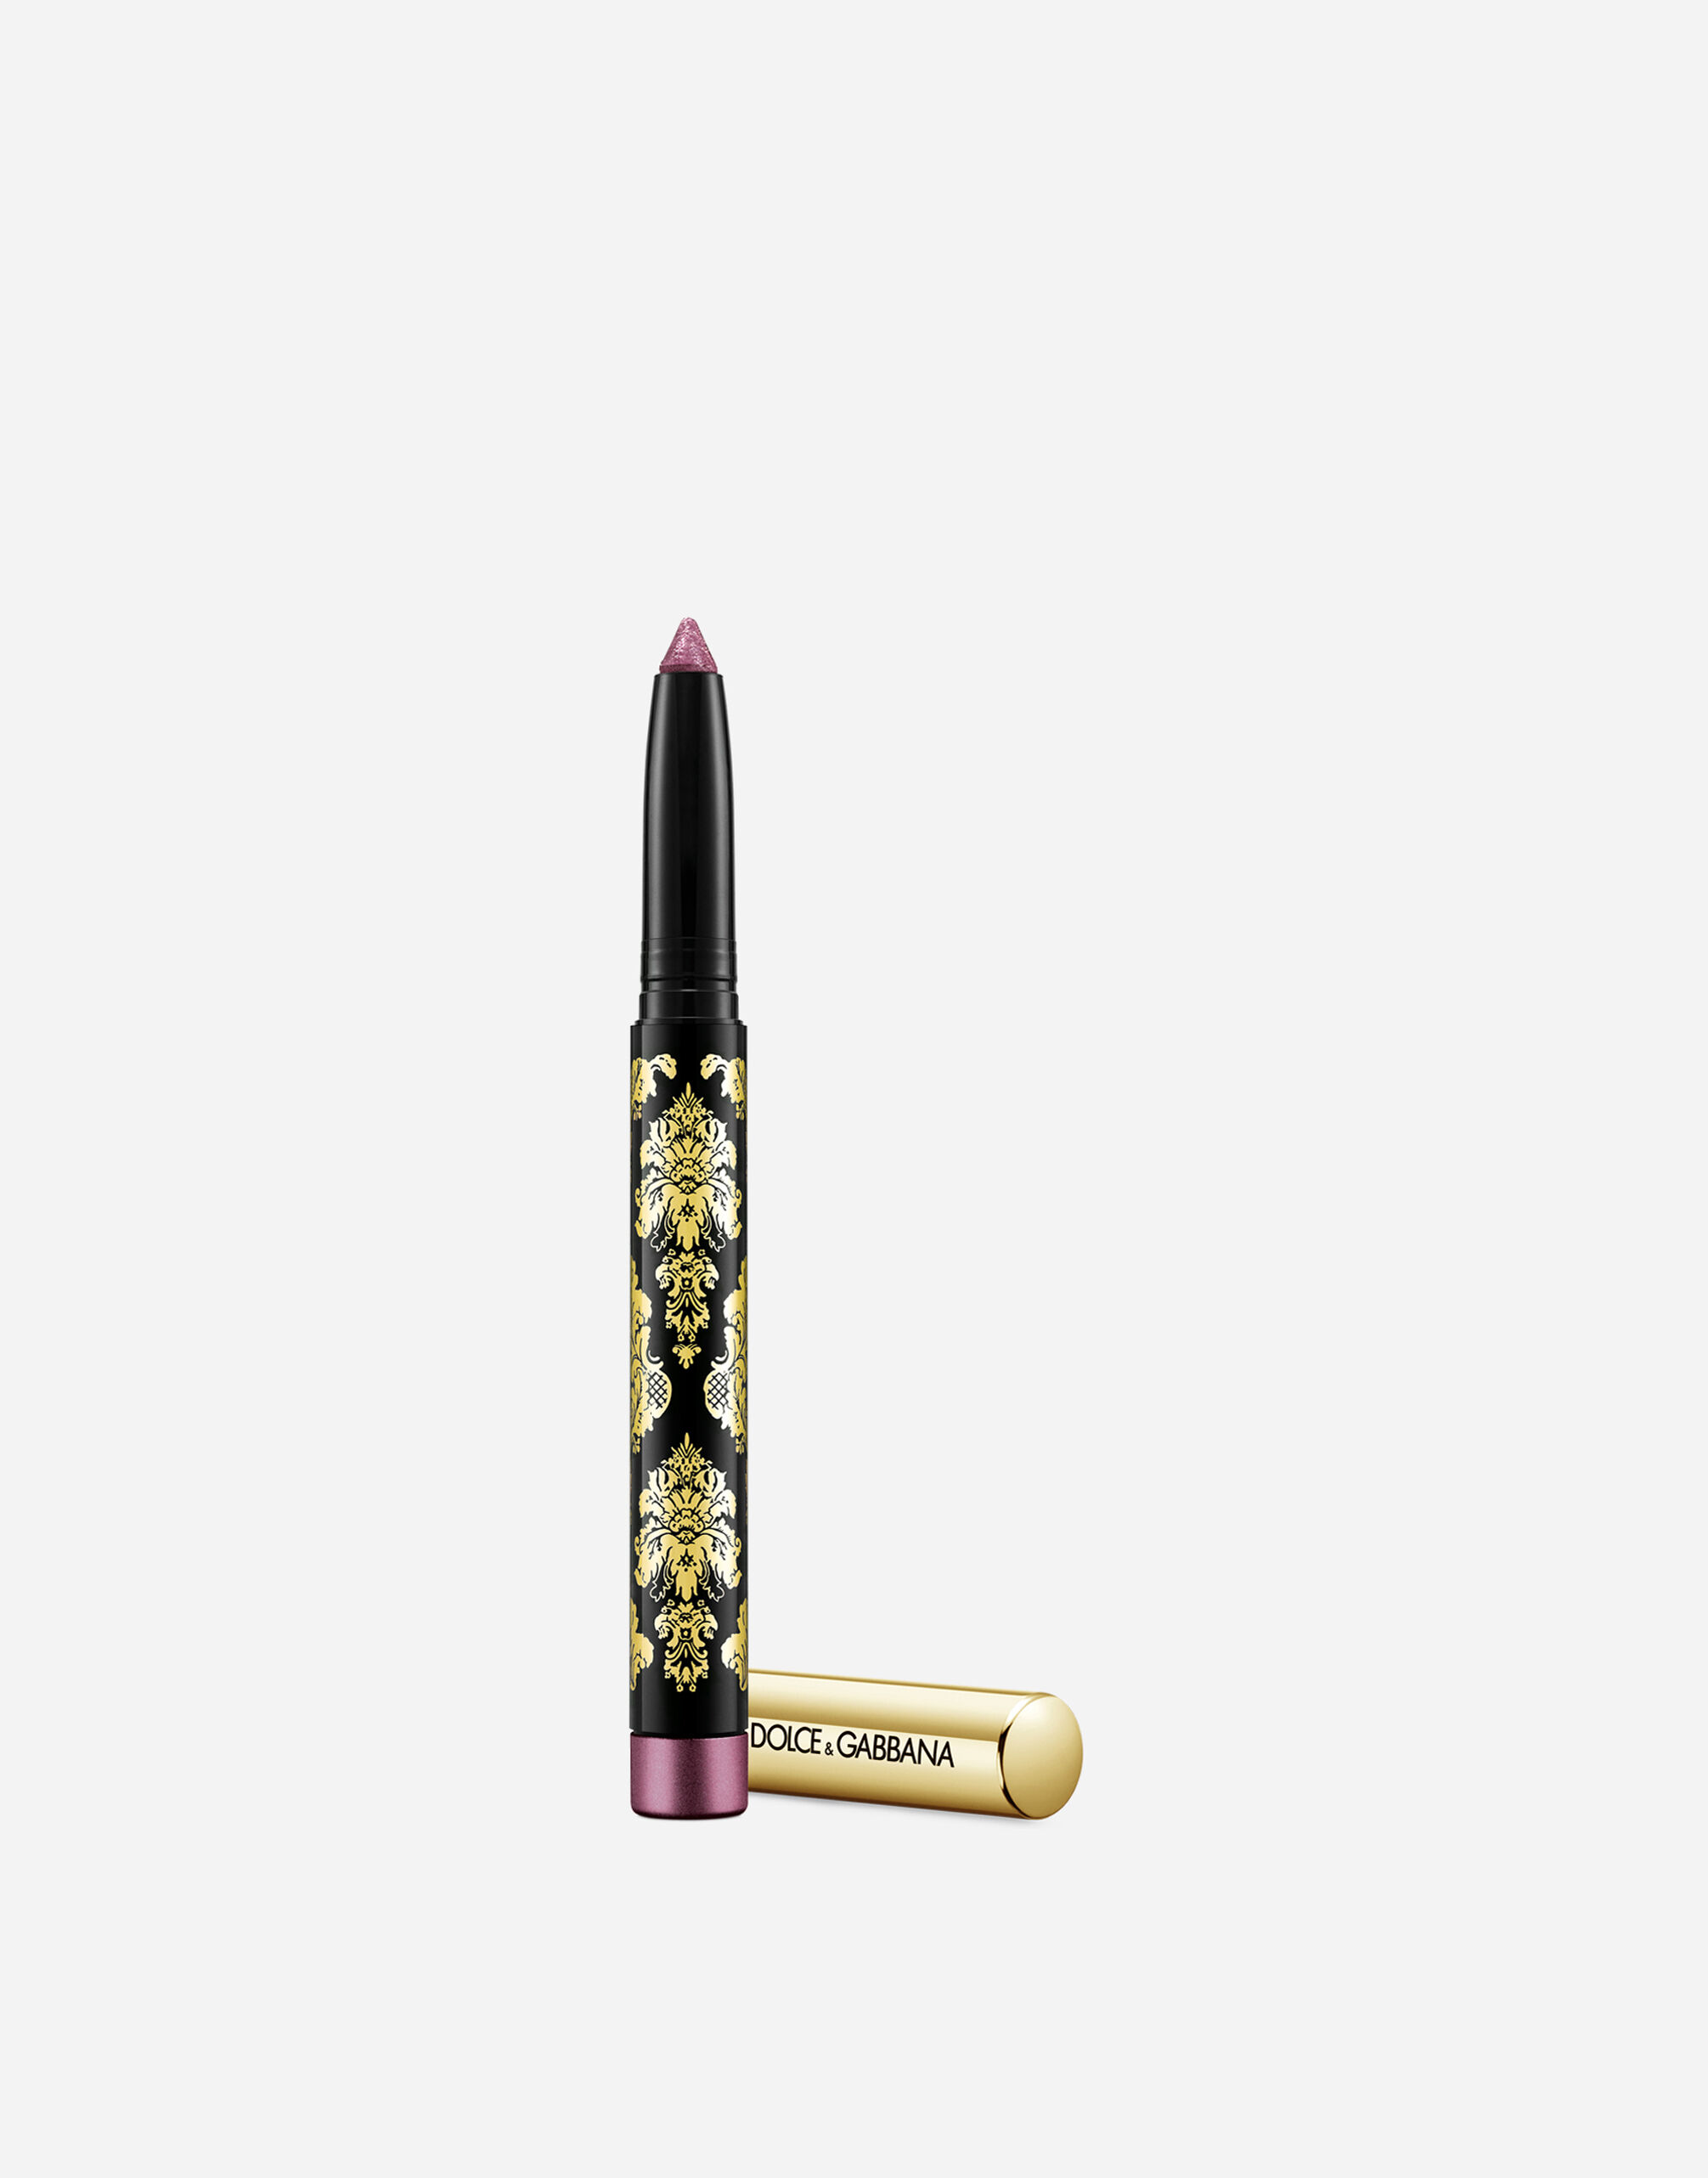 Тени-карандаш для глаз Dolce & Gabbana Intenseyes кремовые, №9 Dahlia, 1,4 г карандаш для губ dolce